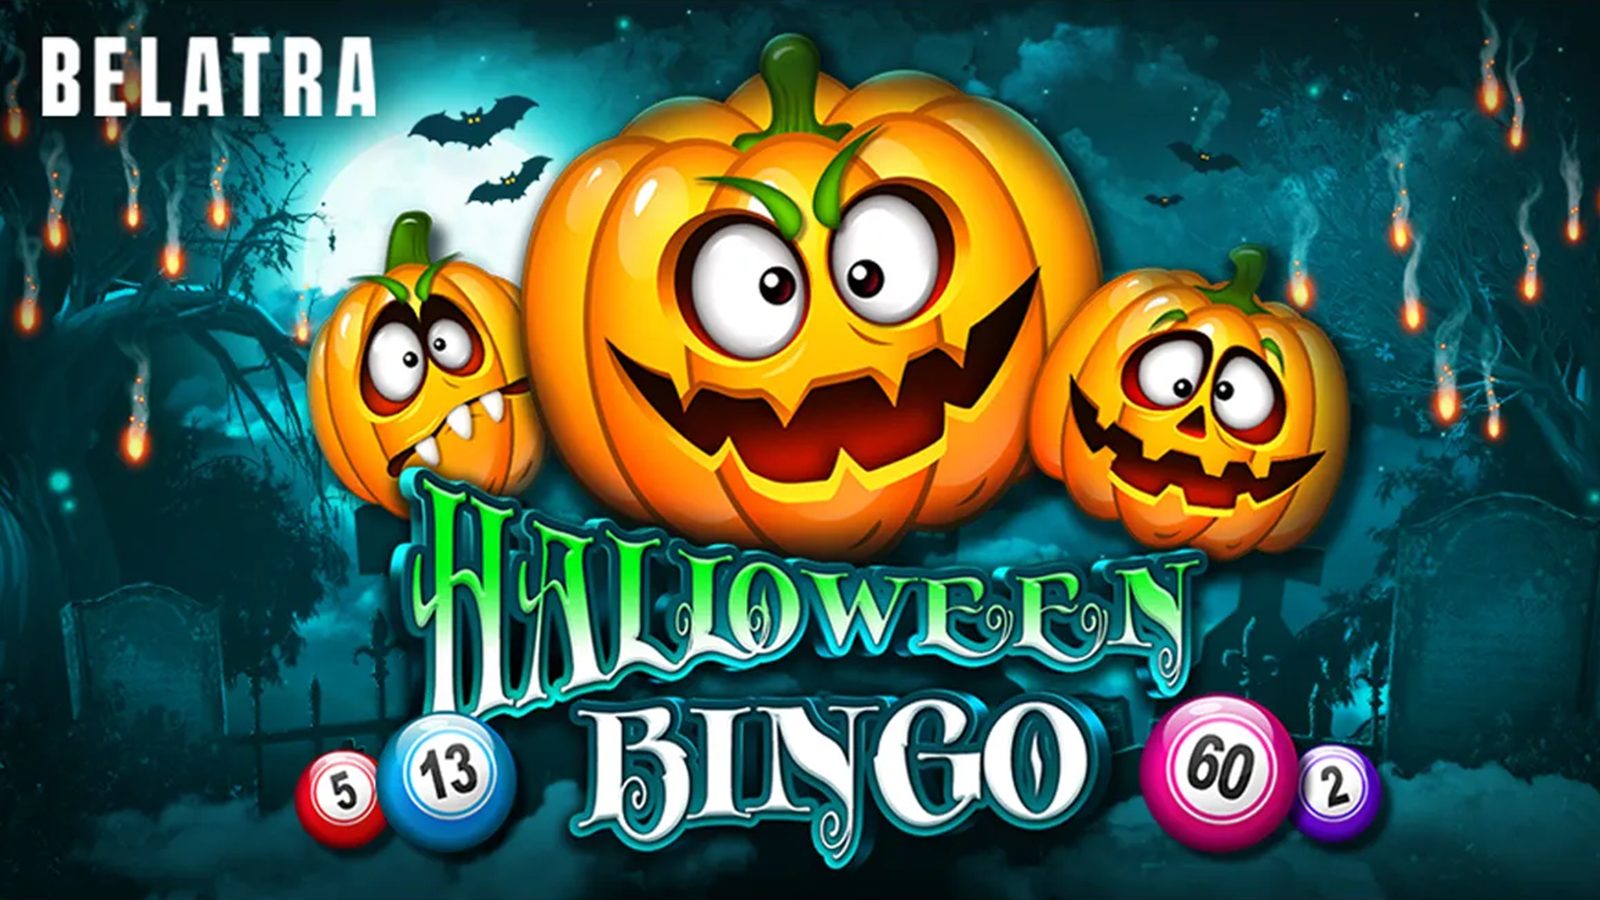 Belatra Games Presents Halloween Bingo